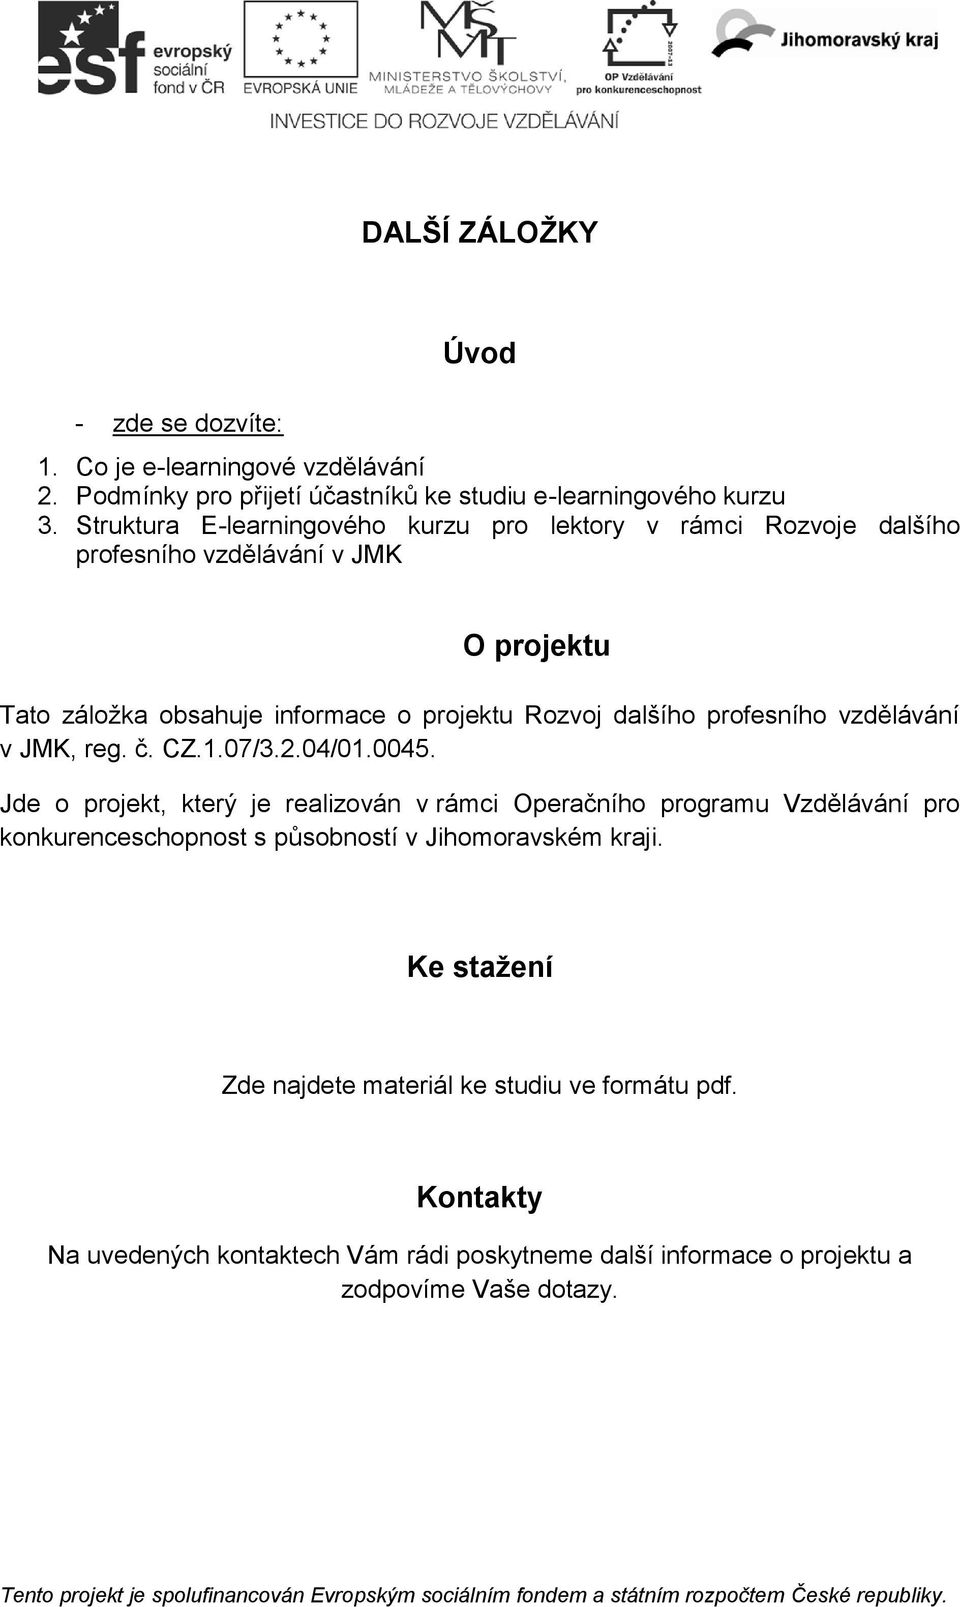 profesního vzdělávání v JMK, reg. č. CZ.1.07/3.2.04/01.0045.